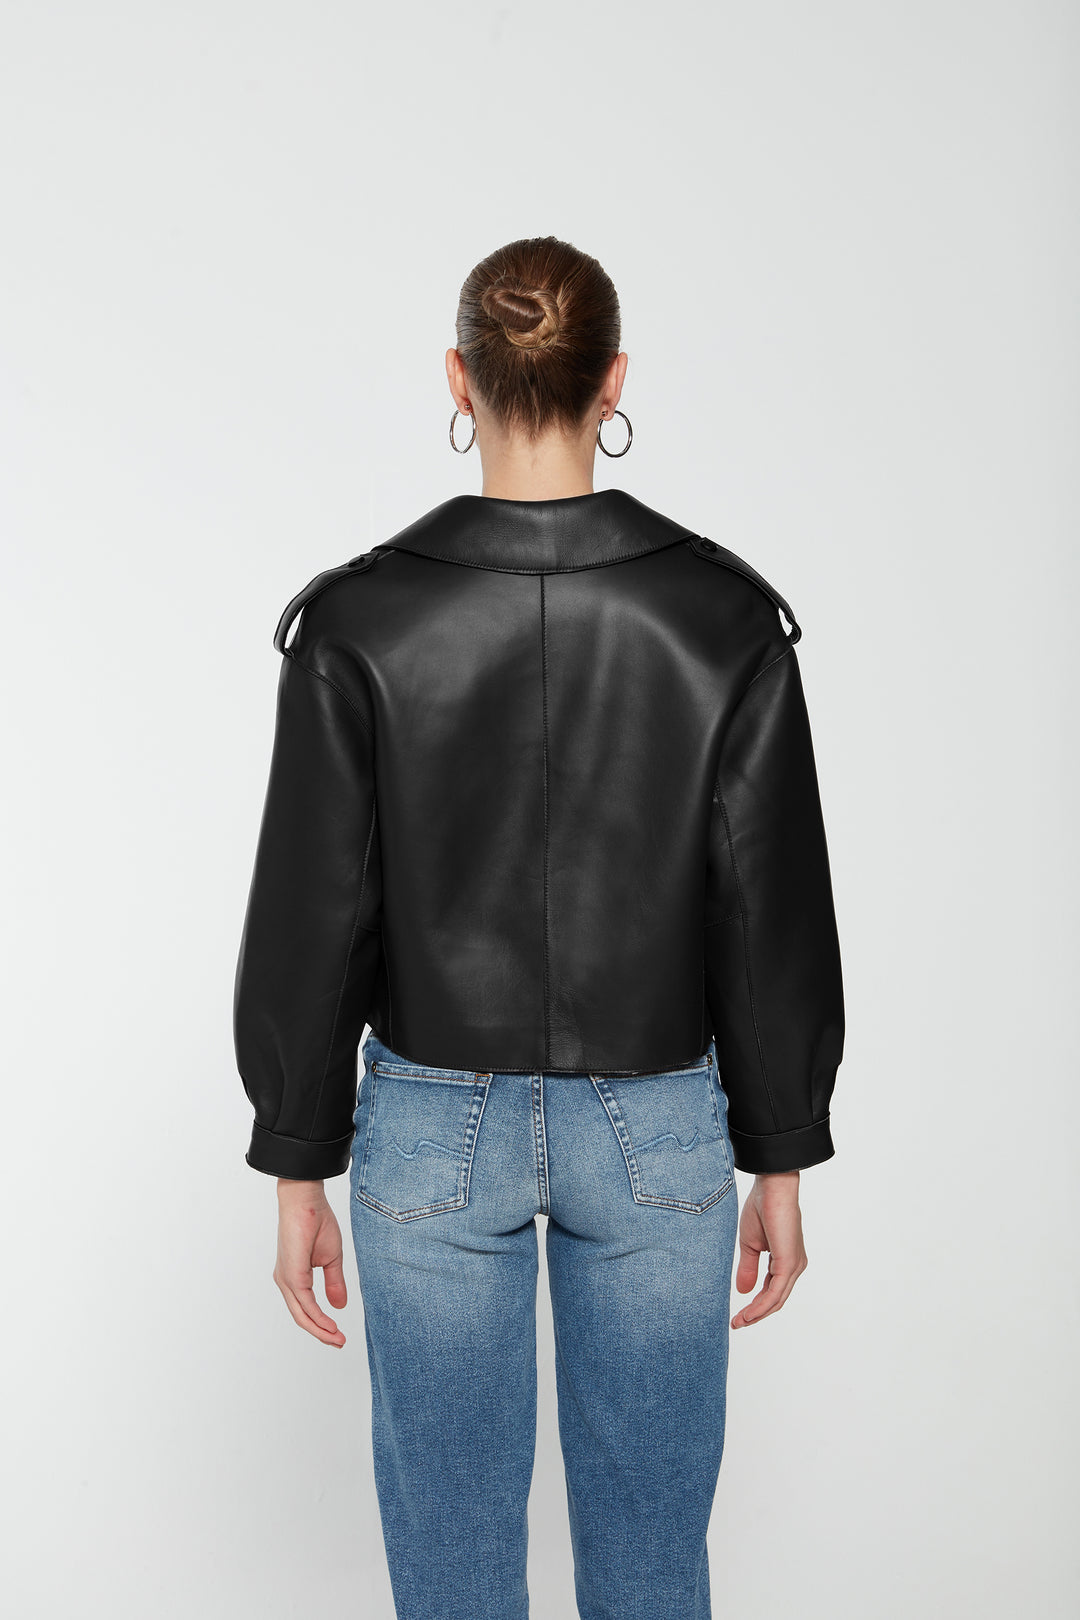 Simi Leather Jacket